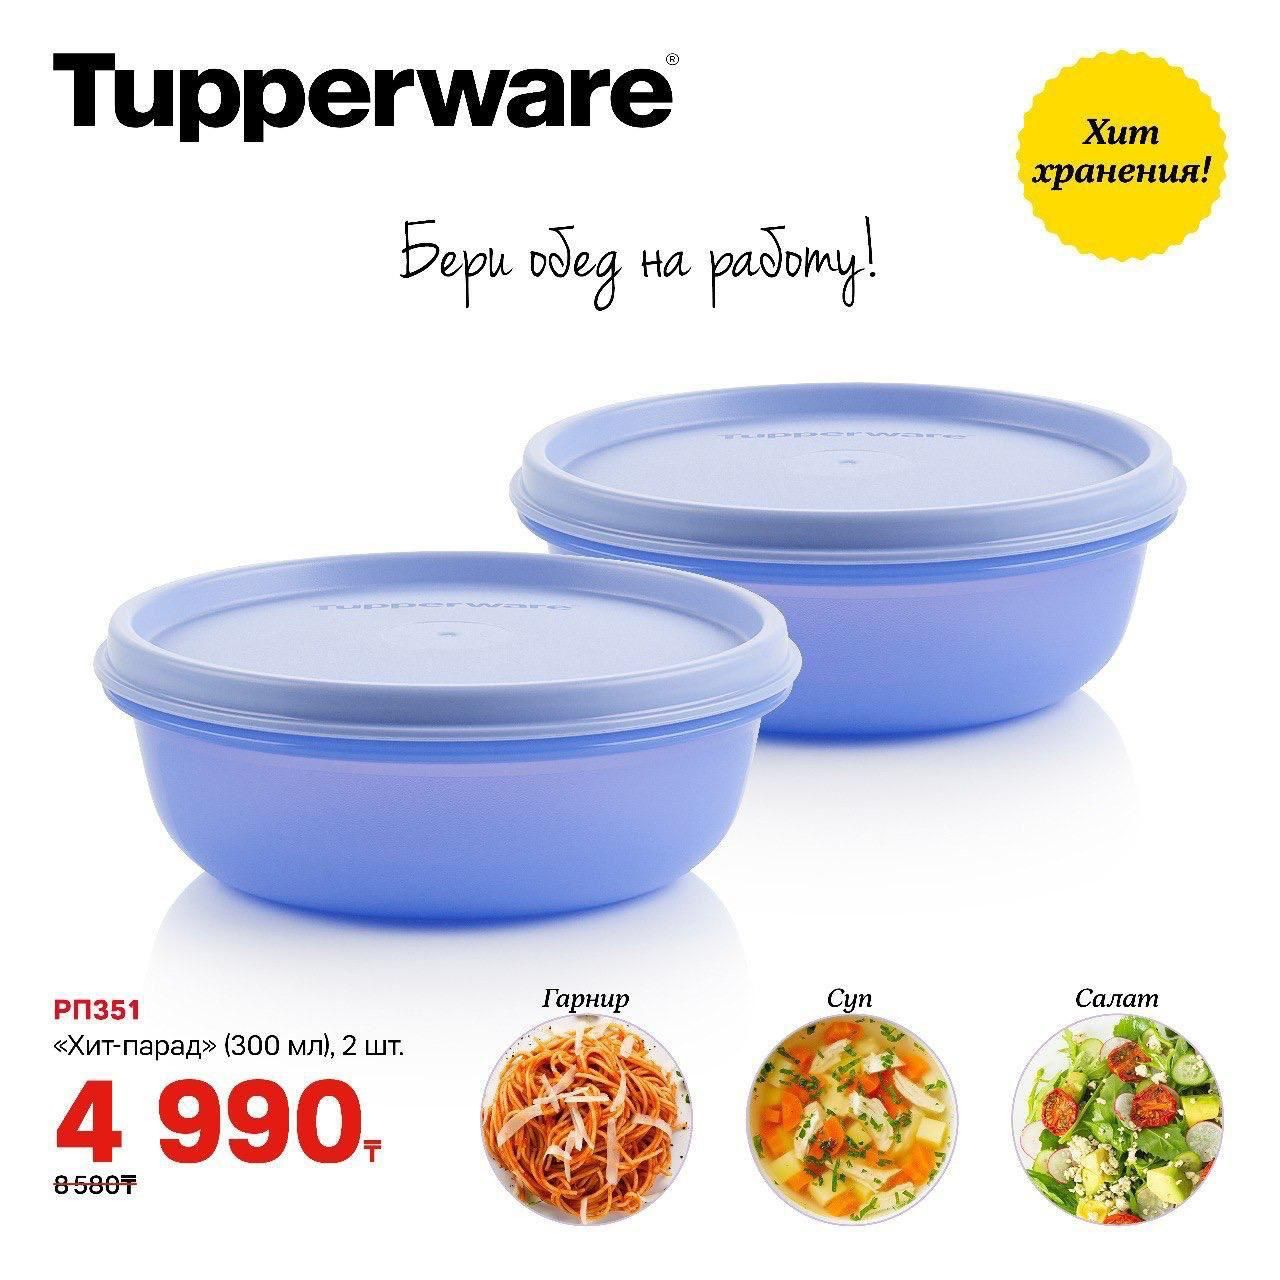 Tupperware посуды